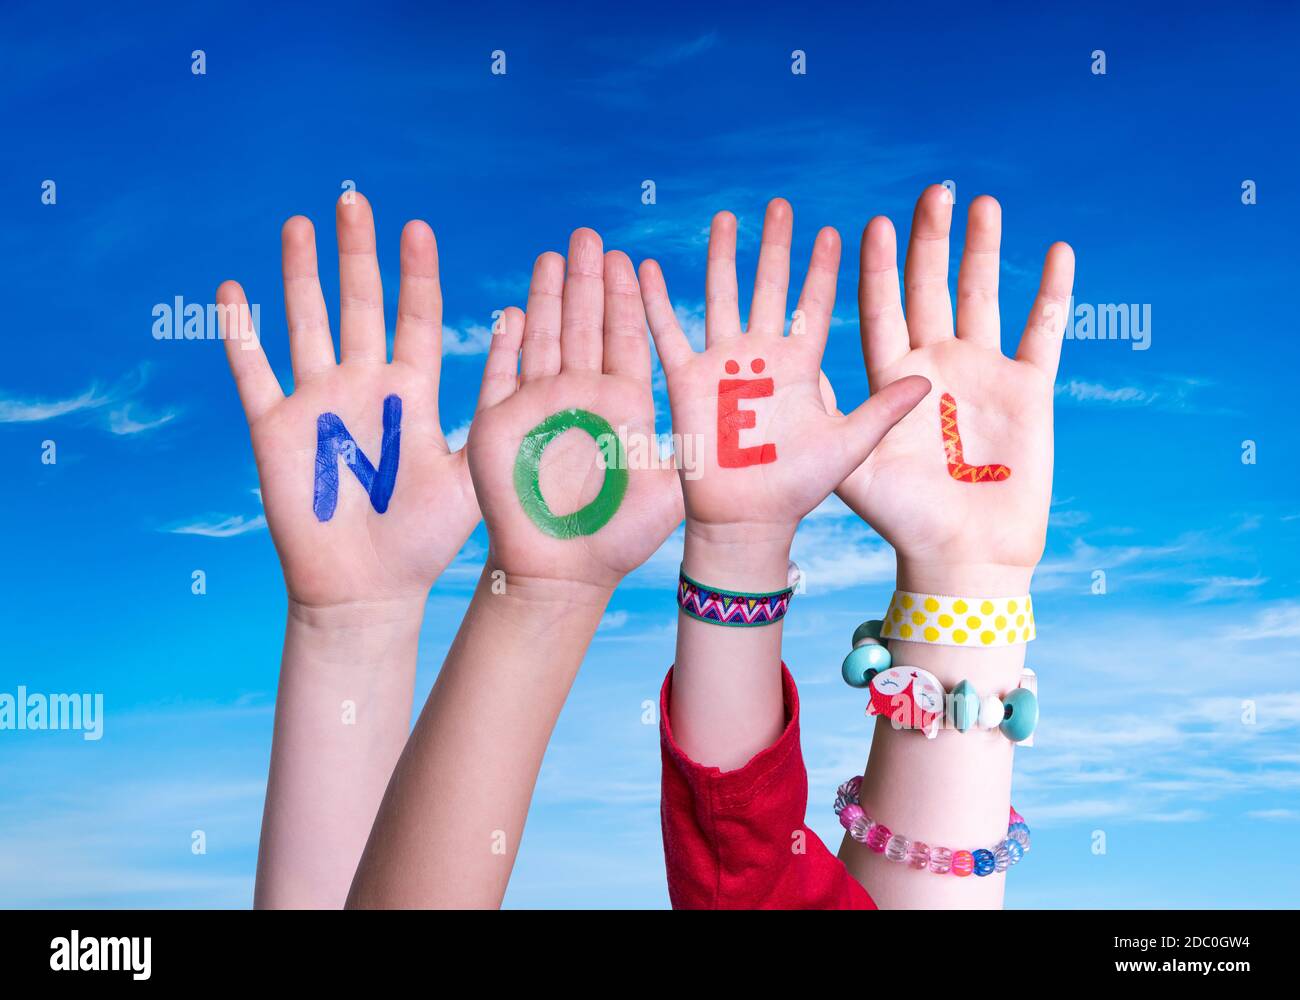 Bambini mani costruire colorato francese parola Noel significa Natale. Cielo blu come sfondo Foto Stock